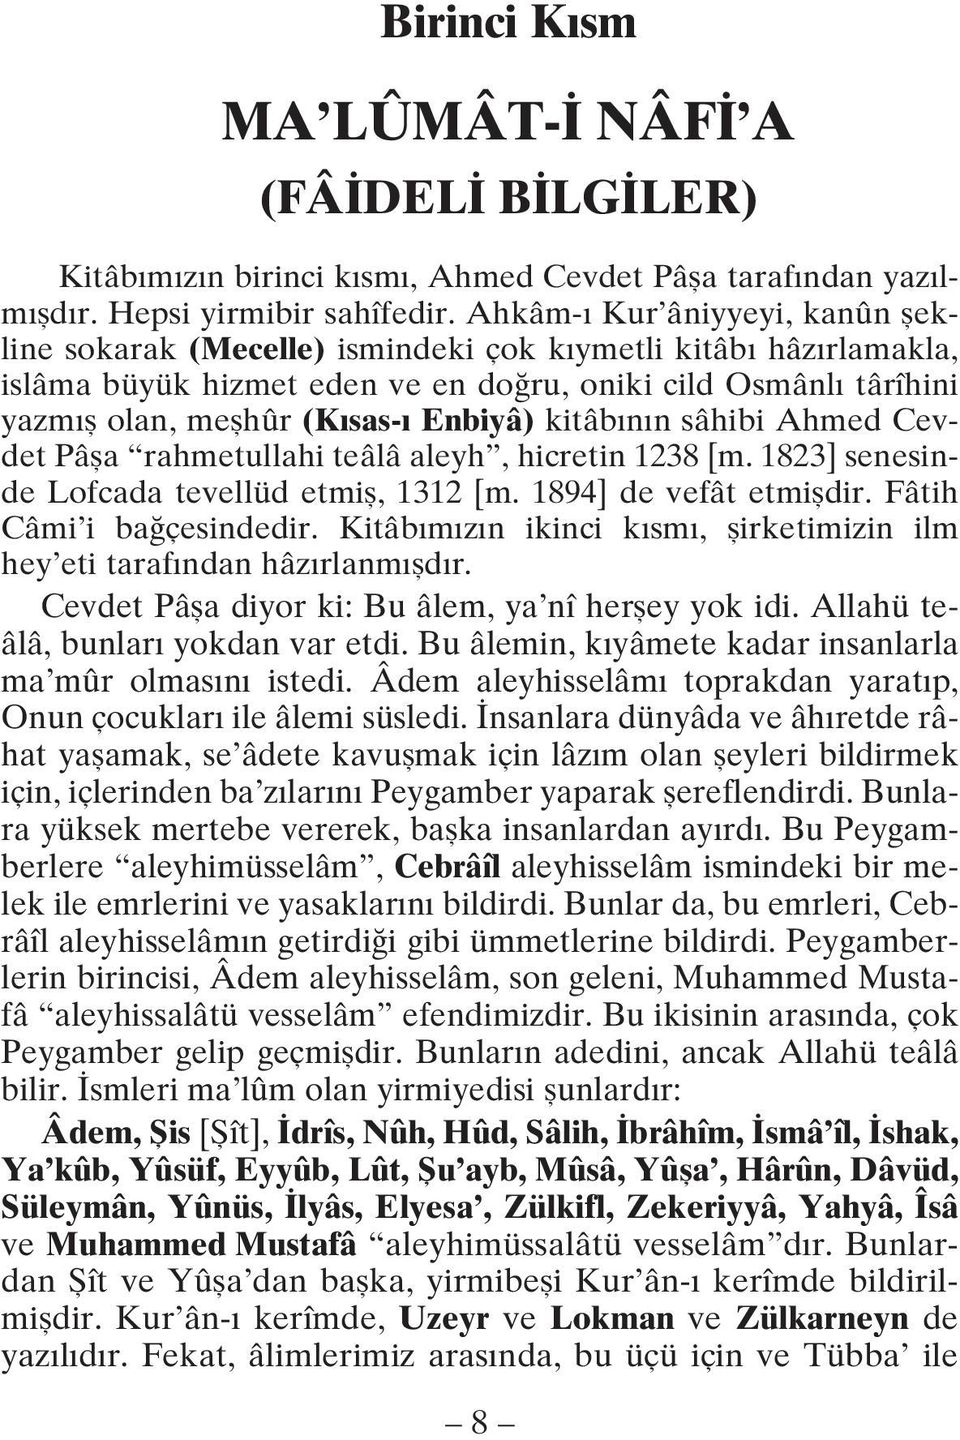 Enbiyâ) kitâbının sâhibi Ahmed Cevdet Pâşa rahmetullahi teâlâ aleyh, hicretin 1238 [m. 1823] senesinde Lofcada tevellüd etmiş, 1312 [m. 1894] de vefât etmişdir. Fâtih Câmi i bağçesindedir.